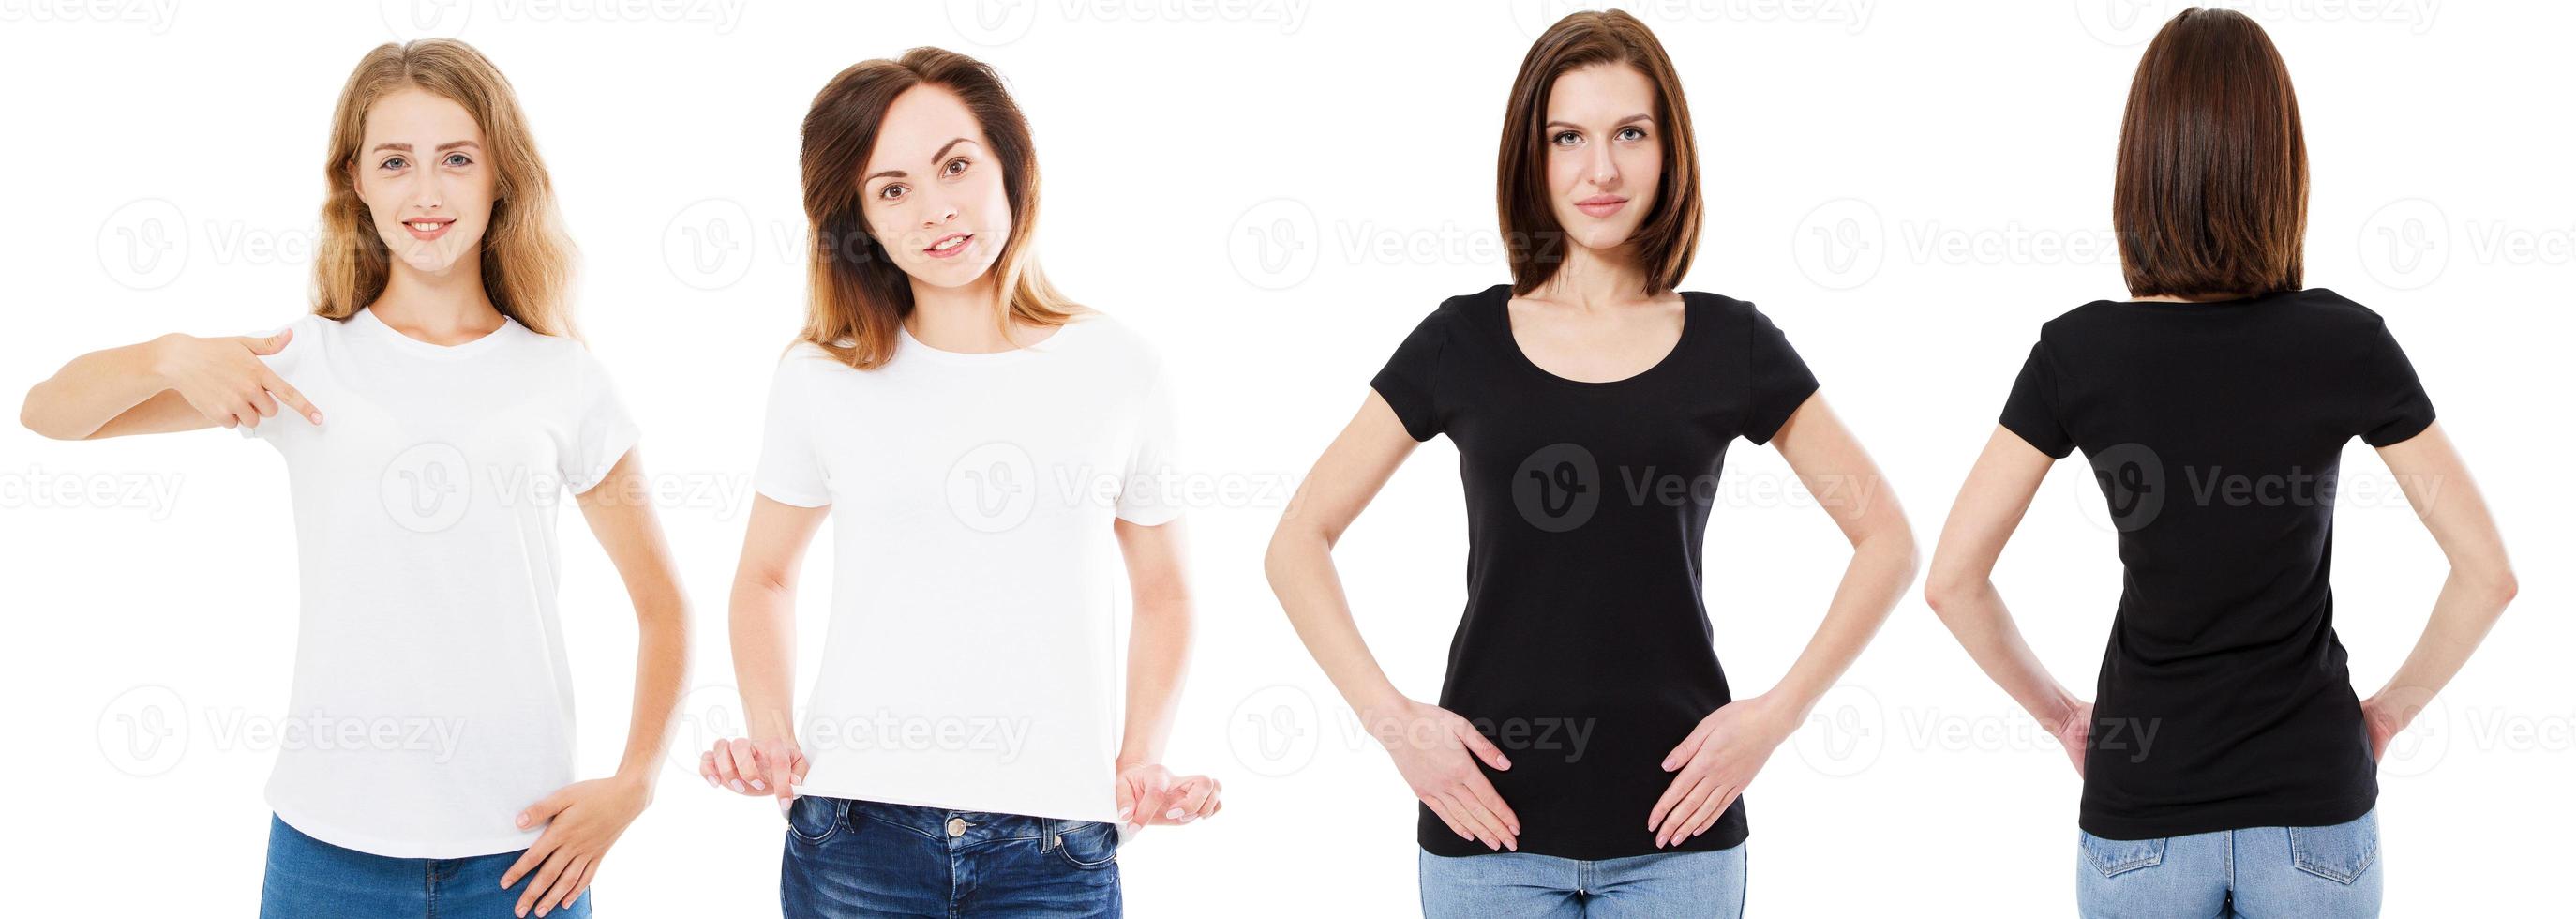 T-Shirts Set, Vorder- und Rückansicht Frau in Schwarz-Weiß-T-Shirt, Mock-up, Kopierraum, drei Frauen-T-Shirt foto